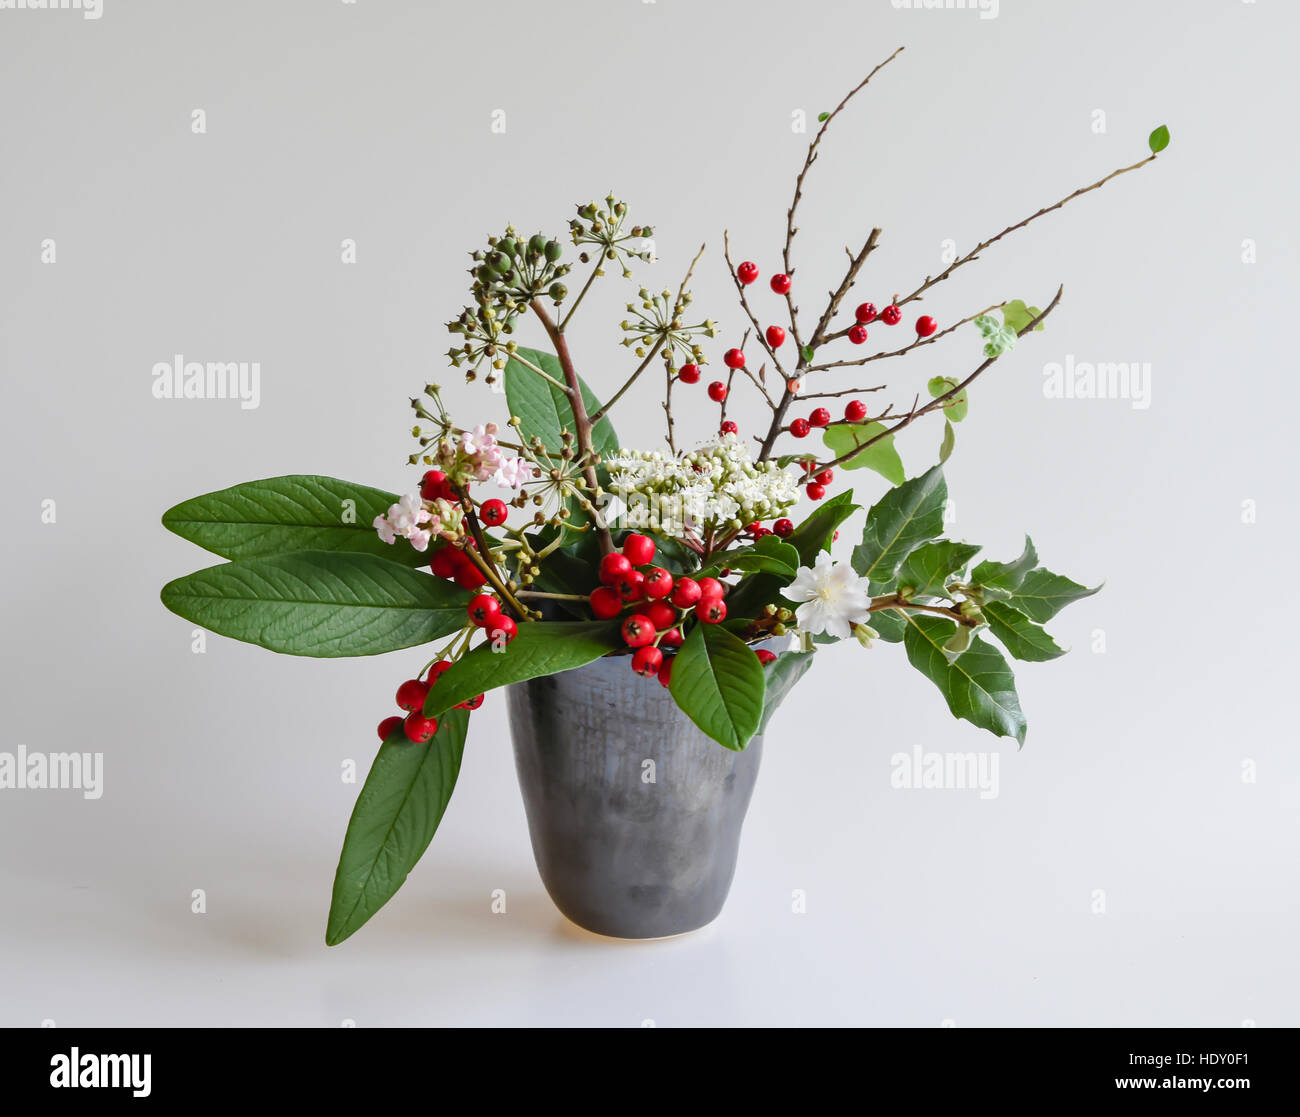 Baies d'hiver, le feuillage et les fleurs dans un vase en céramique 'Studio'. Cotoneaster,, Garrya, fleurs de lierre, Viburnum et cerisier. Banque D'Images